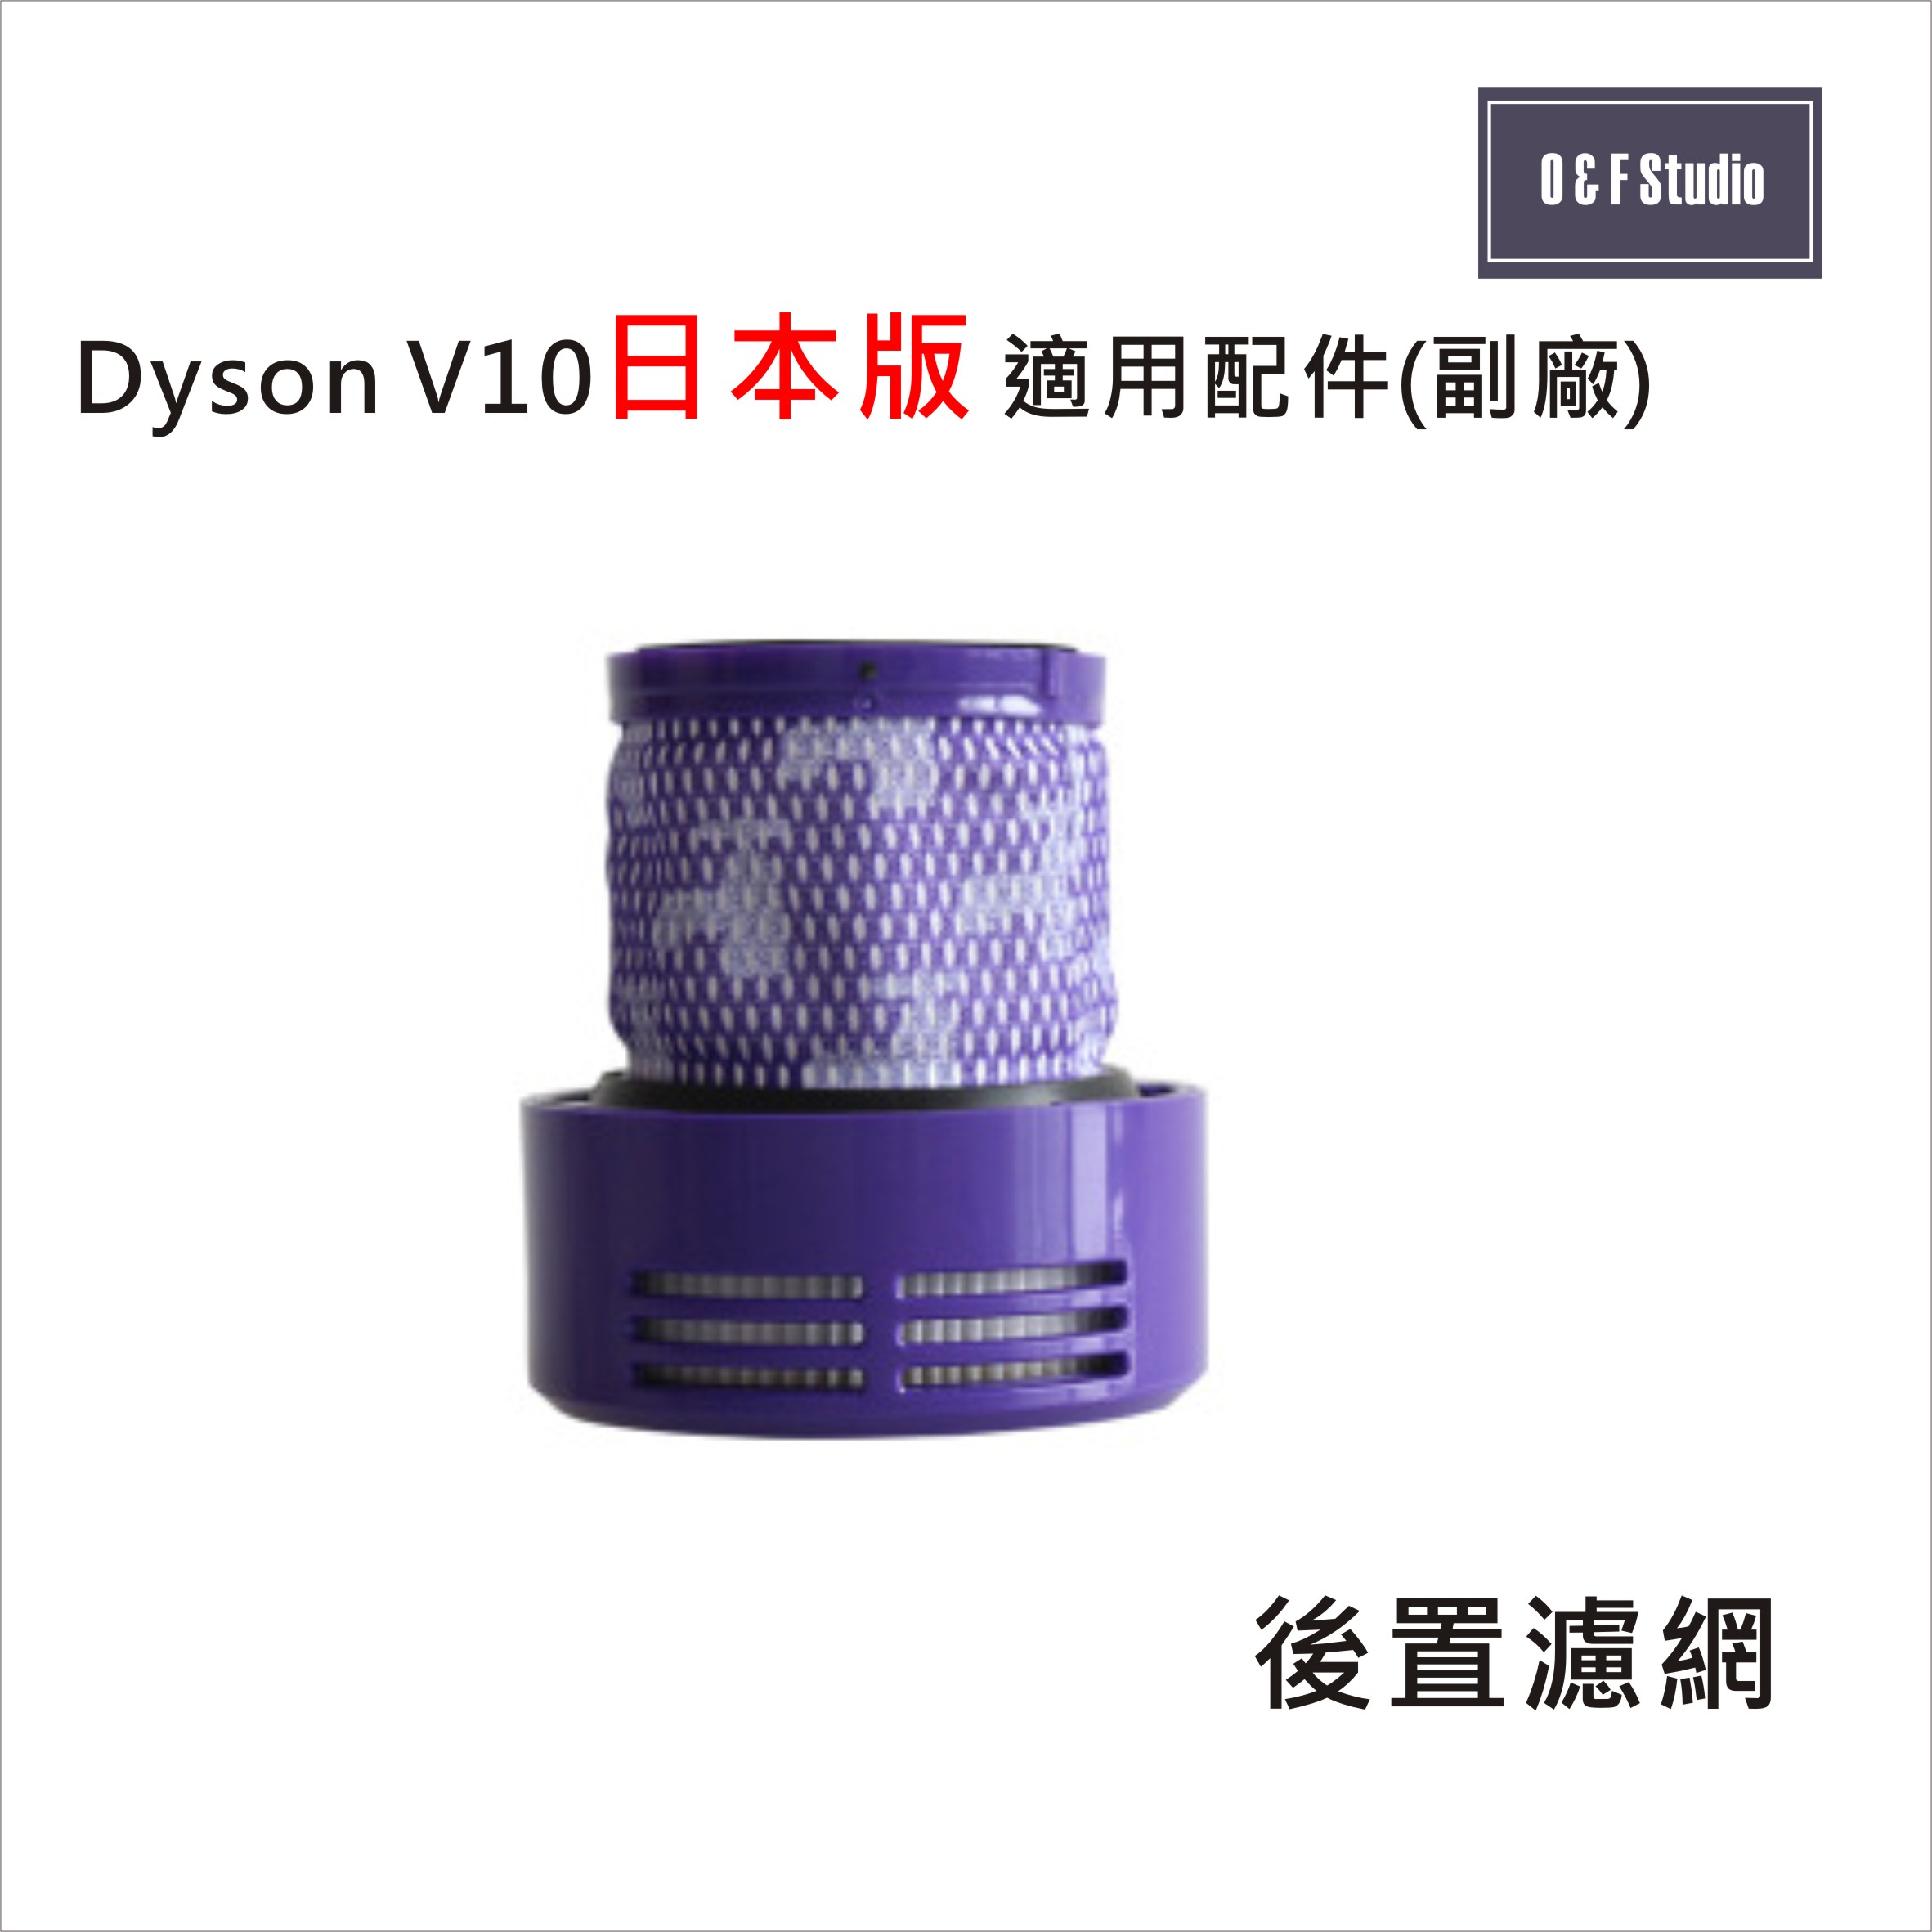 Dyson 戴森 V10 (短款)日本版 手持式吸塵器適用後置濾網(副廠) HEPA濾心 後置濾蓋【居家達人DS008】